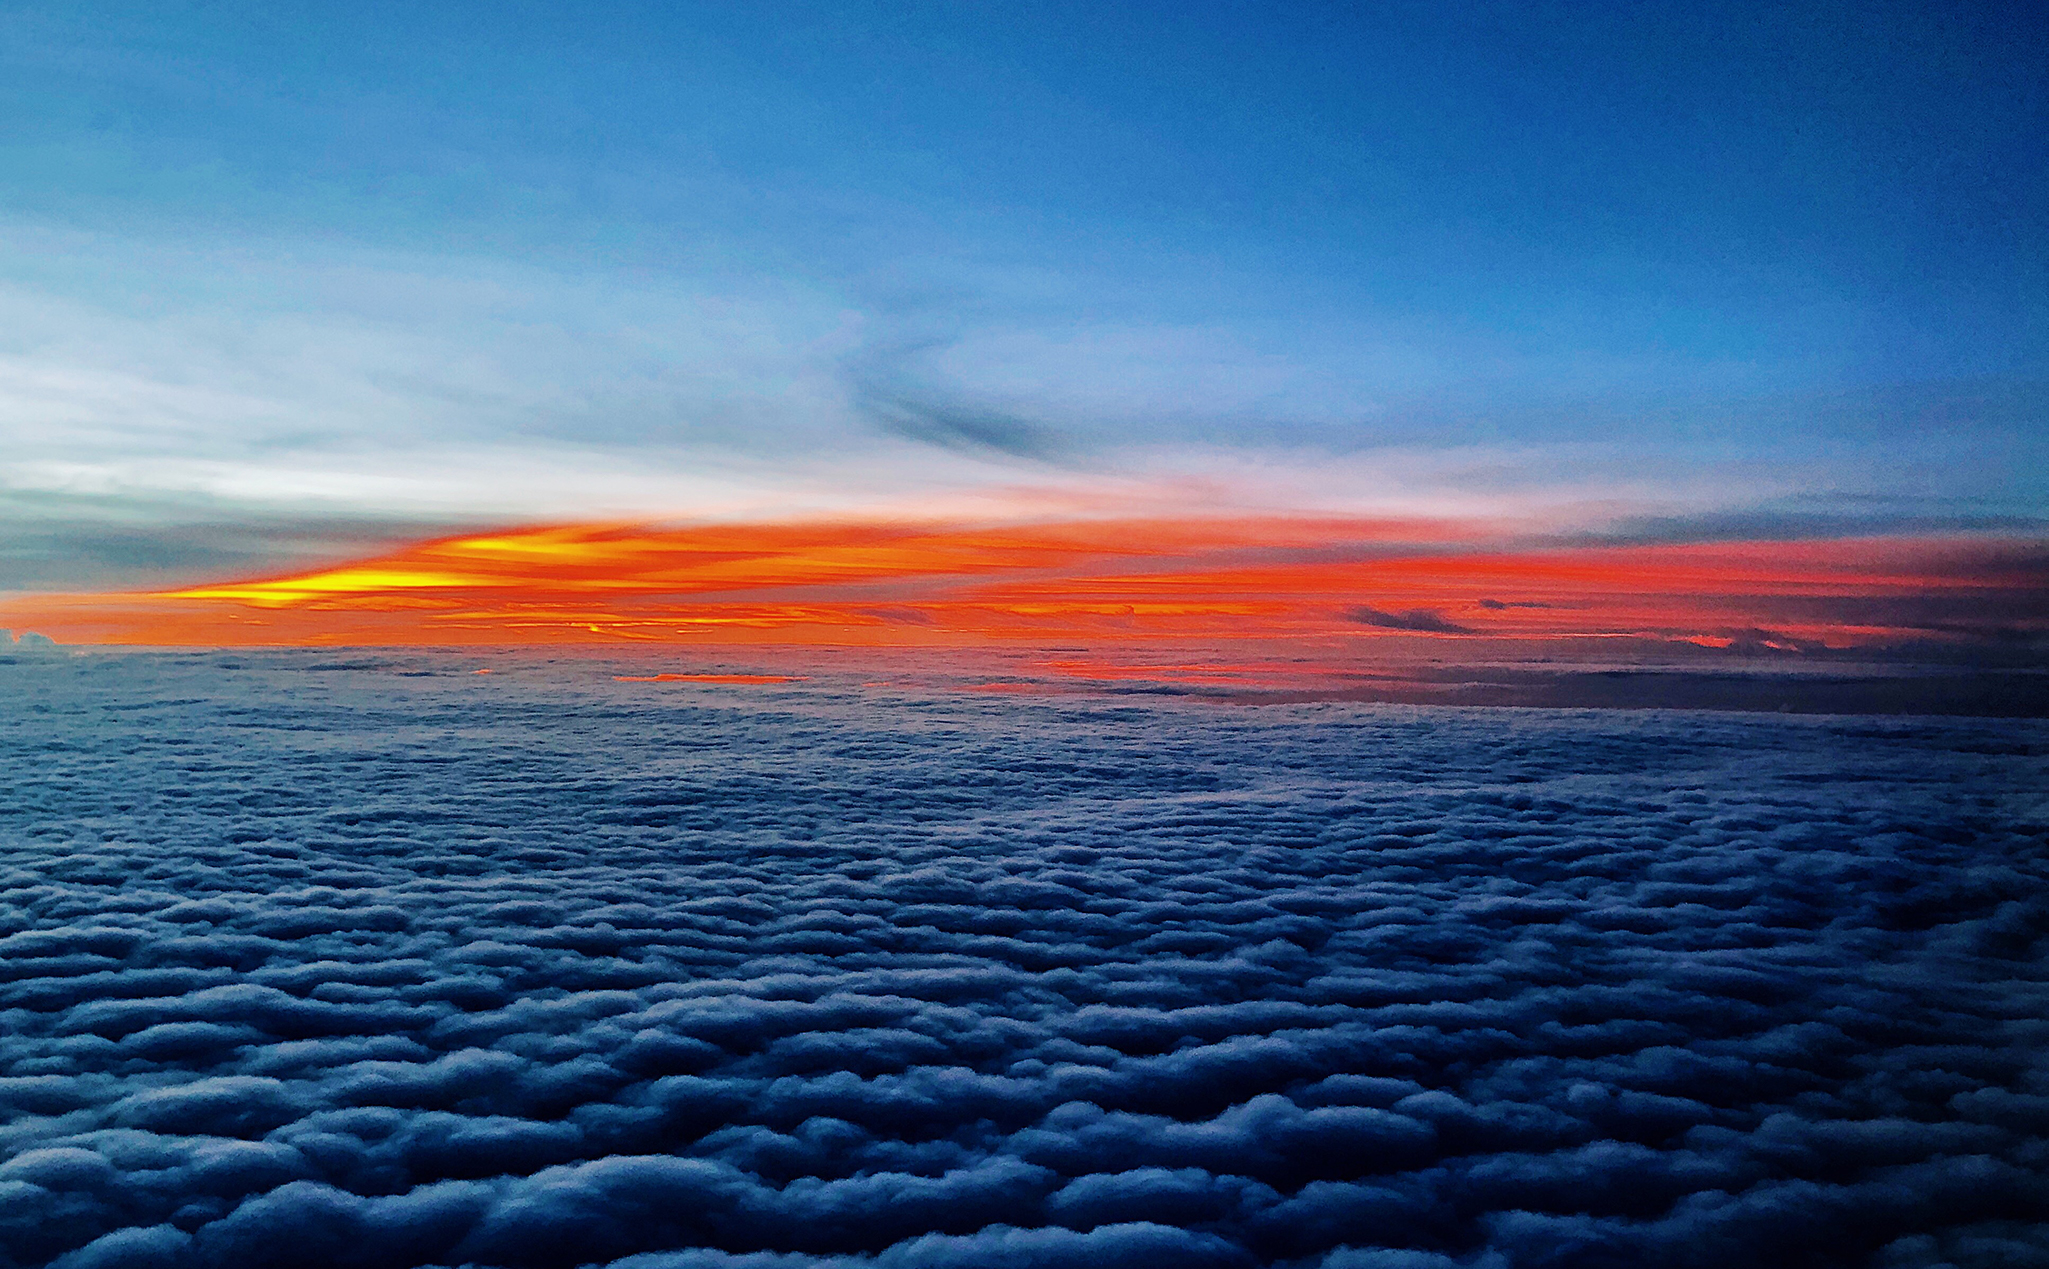 Nếu bạn yêu thích chụp ảnh và những chuyến bay thú vị, hãy thử ngồi ở vị trí ô cửa máy bay và chụp lại những cảnh tuyệt đẹp của bầu trời. Điều đó chắc chắn sẽ mang đến cho bạn những khoảnh khắc đáng nhớ.